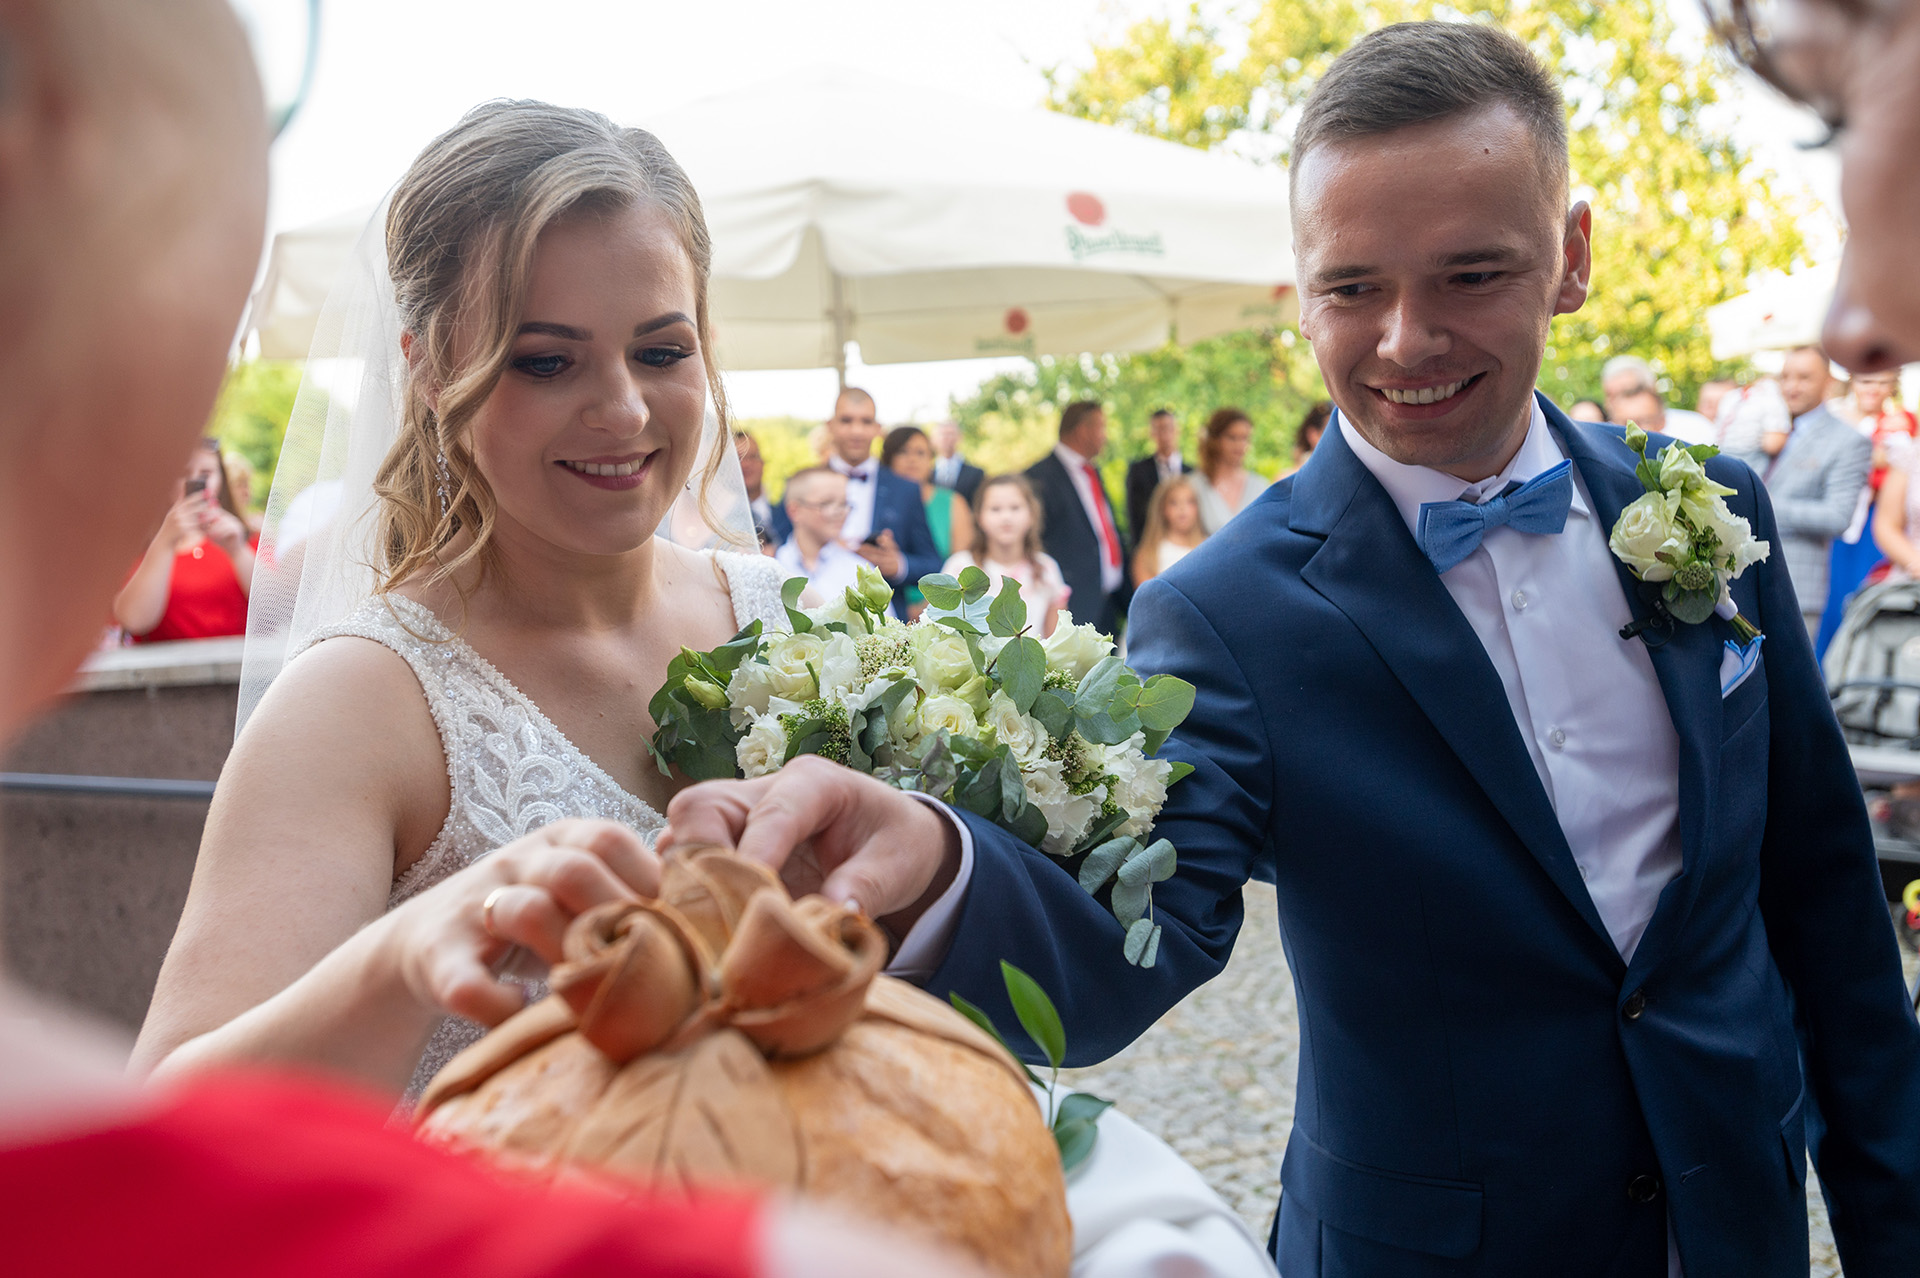 wesele - fotograf ślubny - fotografia ślubna - zdjecia podczas wesela